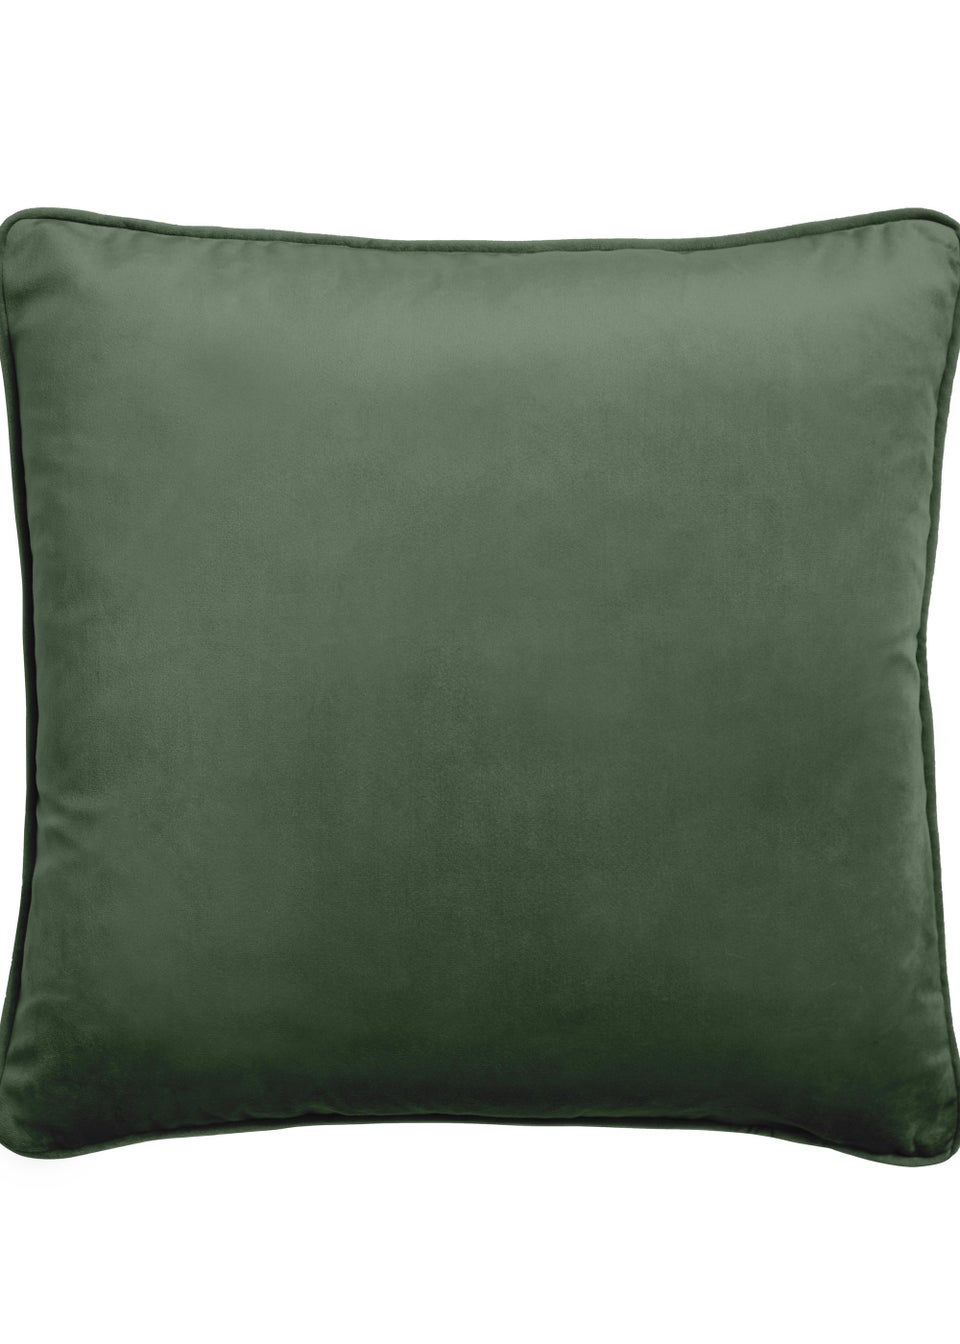 Laurence Llewelyn-Bowen Montrose Cushion Cover (43cm x 43cm)